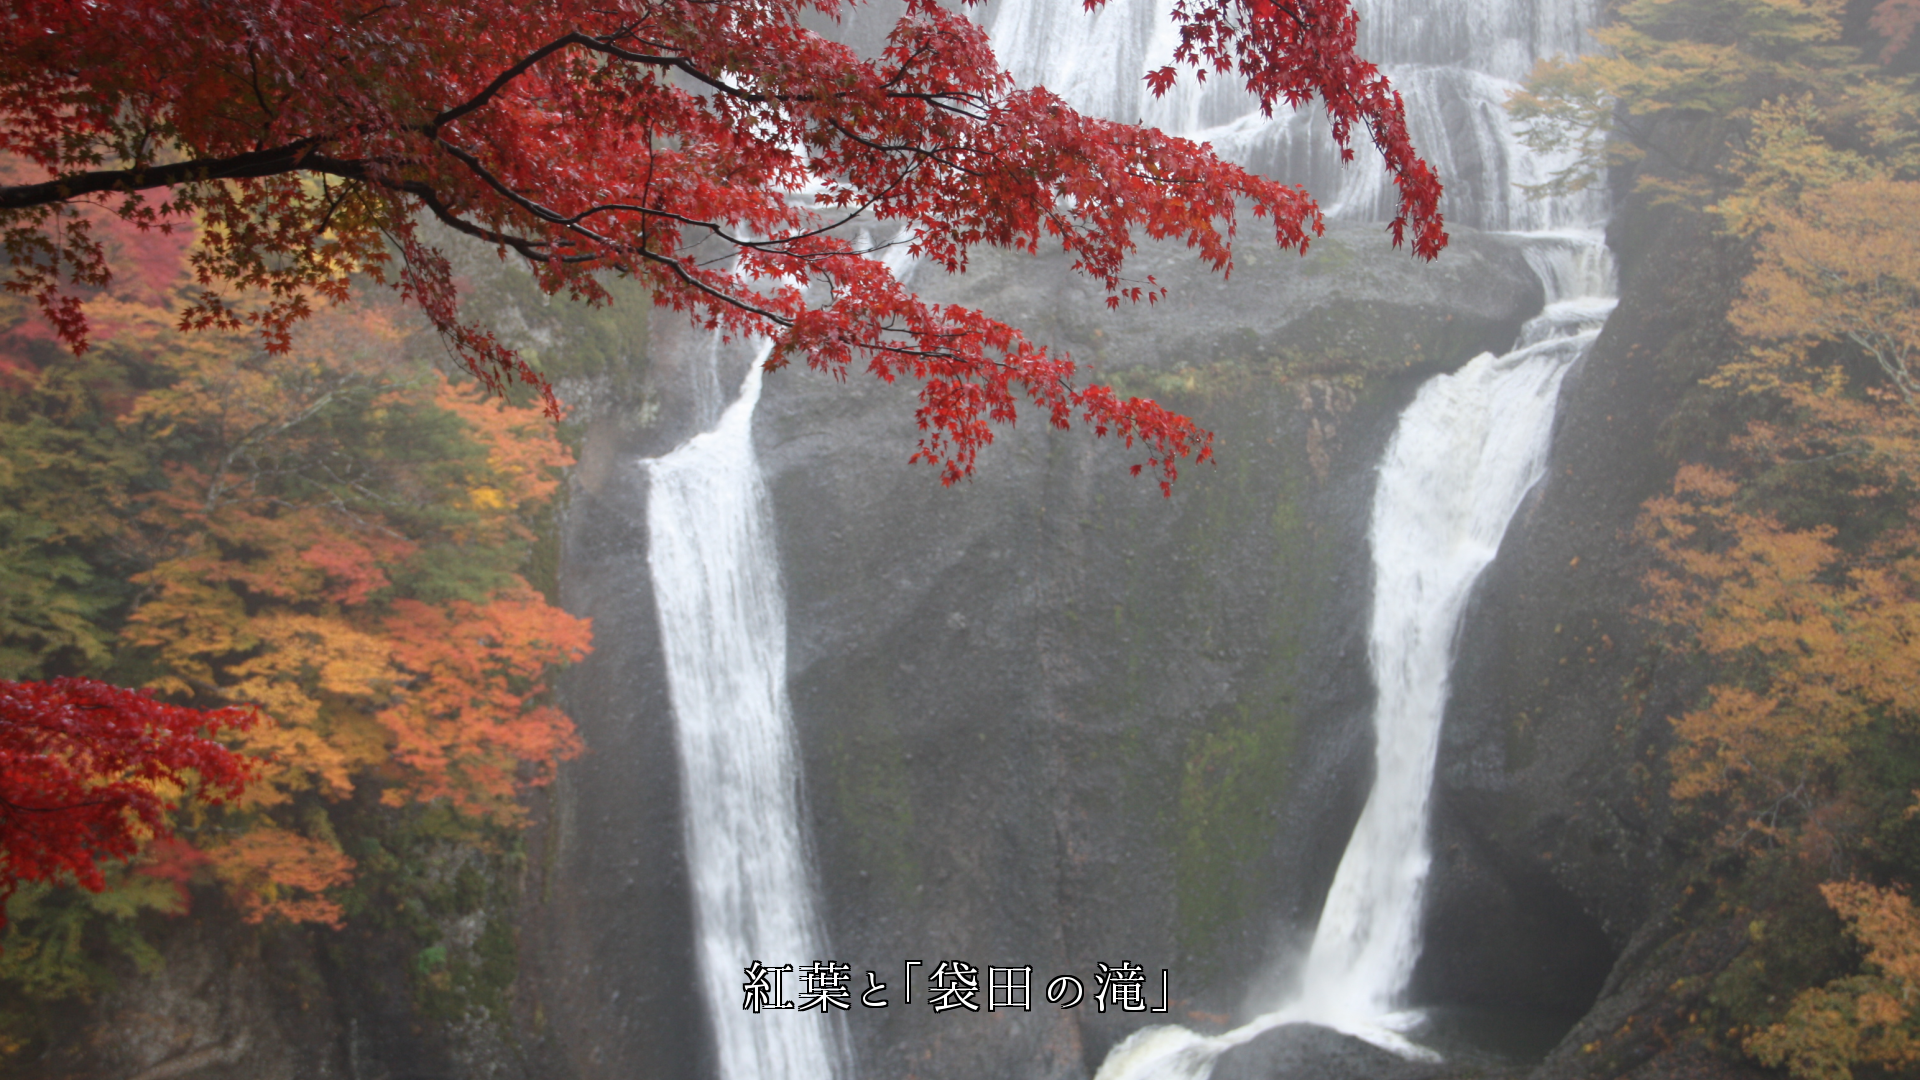 滝の白い筋に映える紅葉　共に美しさを　秋の風情を　高め合っている　
